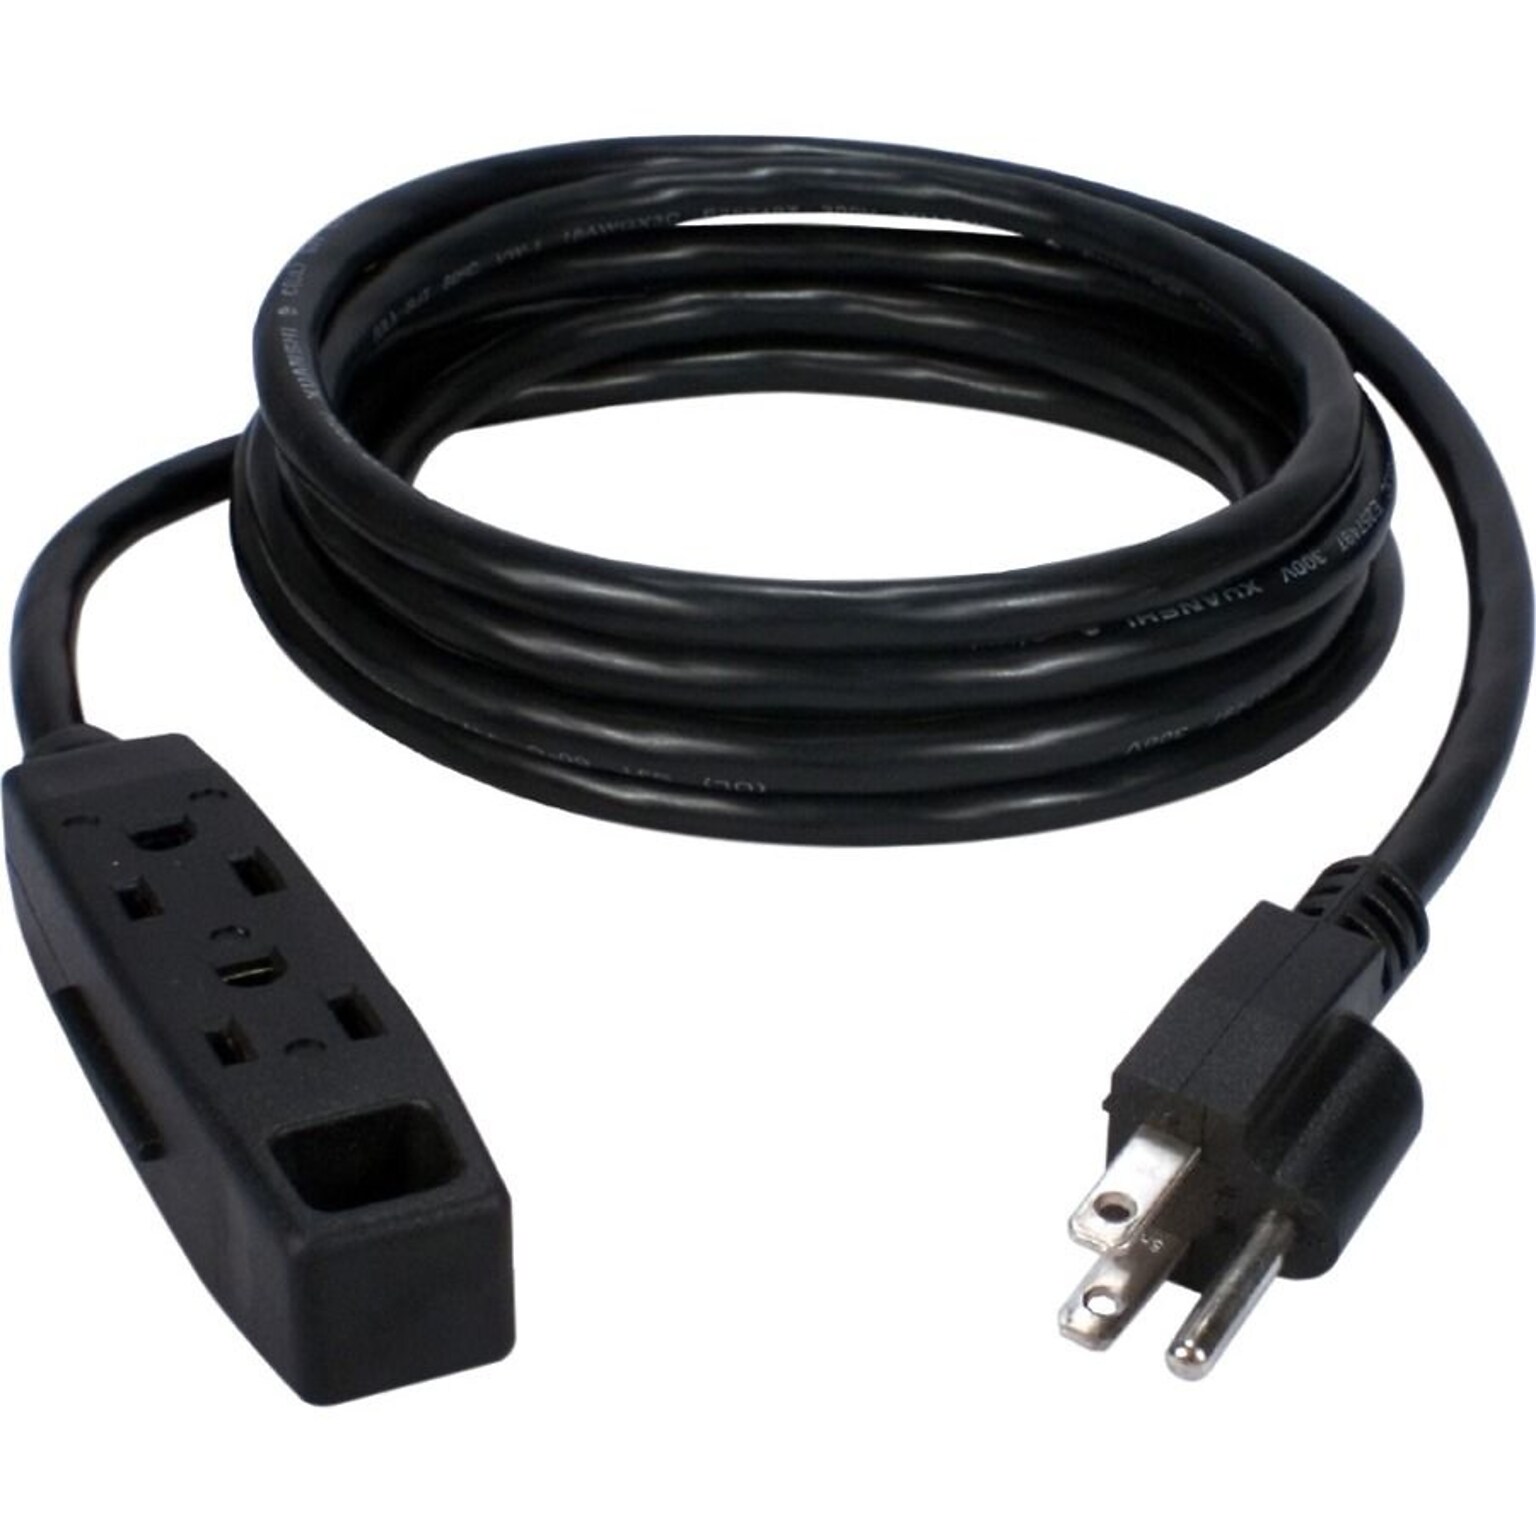 QVS® 15 3-Outlet Power Extension Cord, Black (PC3PX-15-2PK)